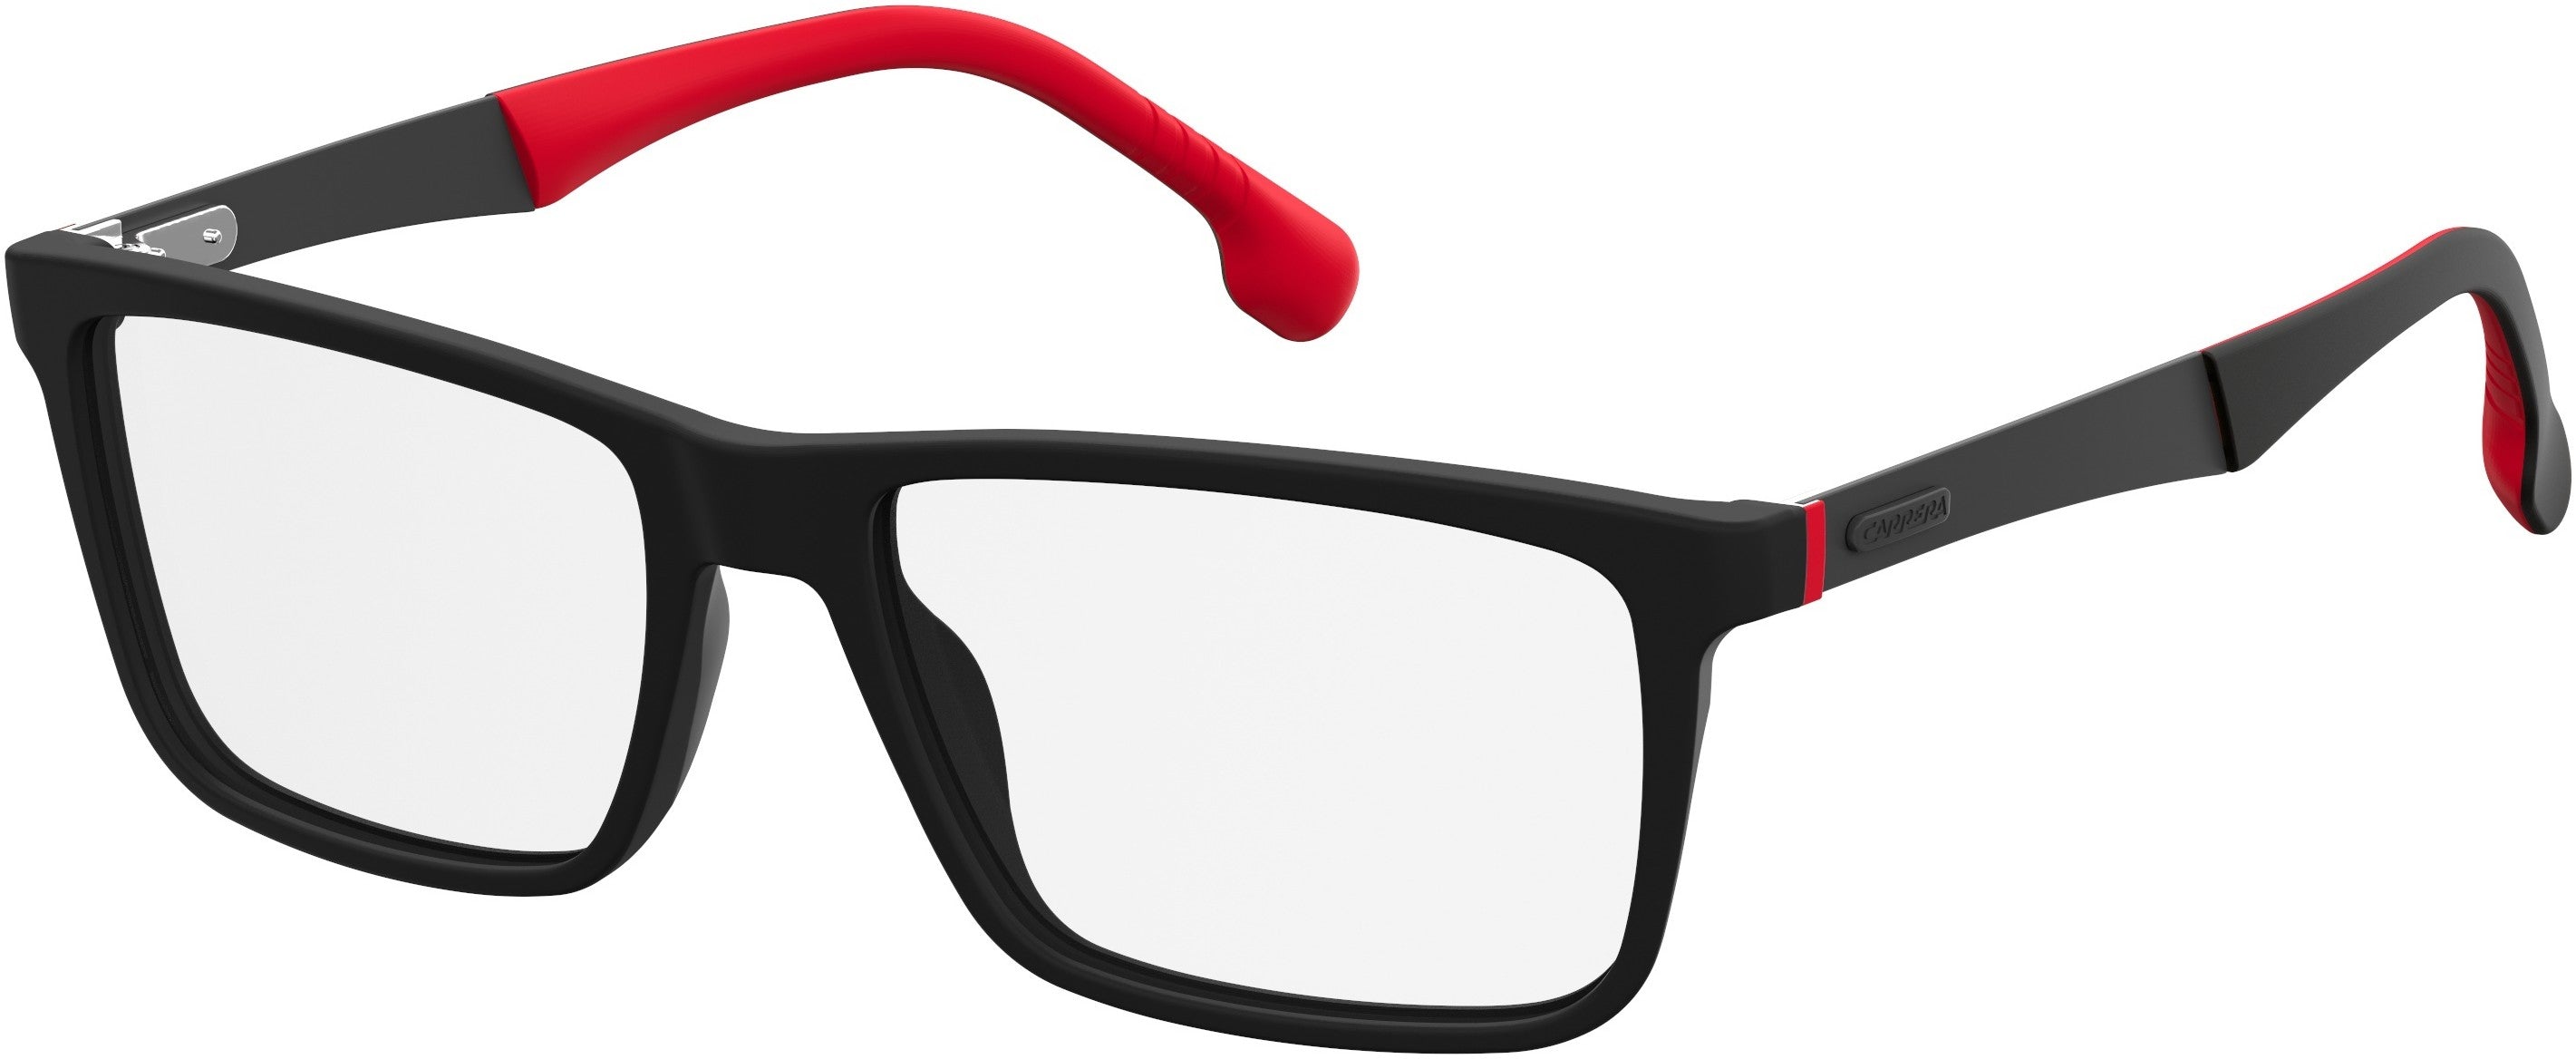  Carrera 8825/V Rectangular Eyeglasses 0003-0003  Matte Black (00 Demo Lens)